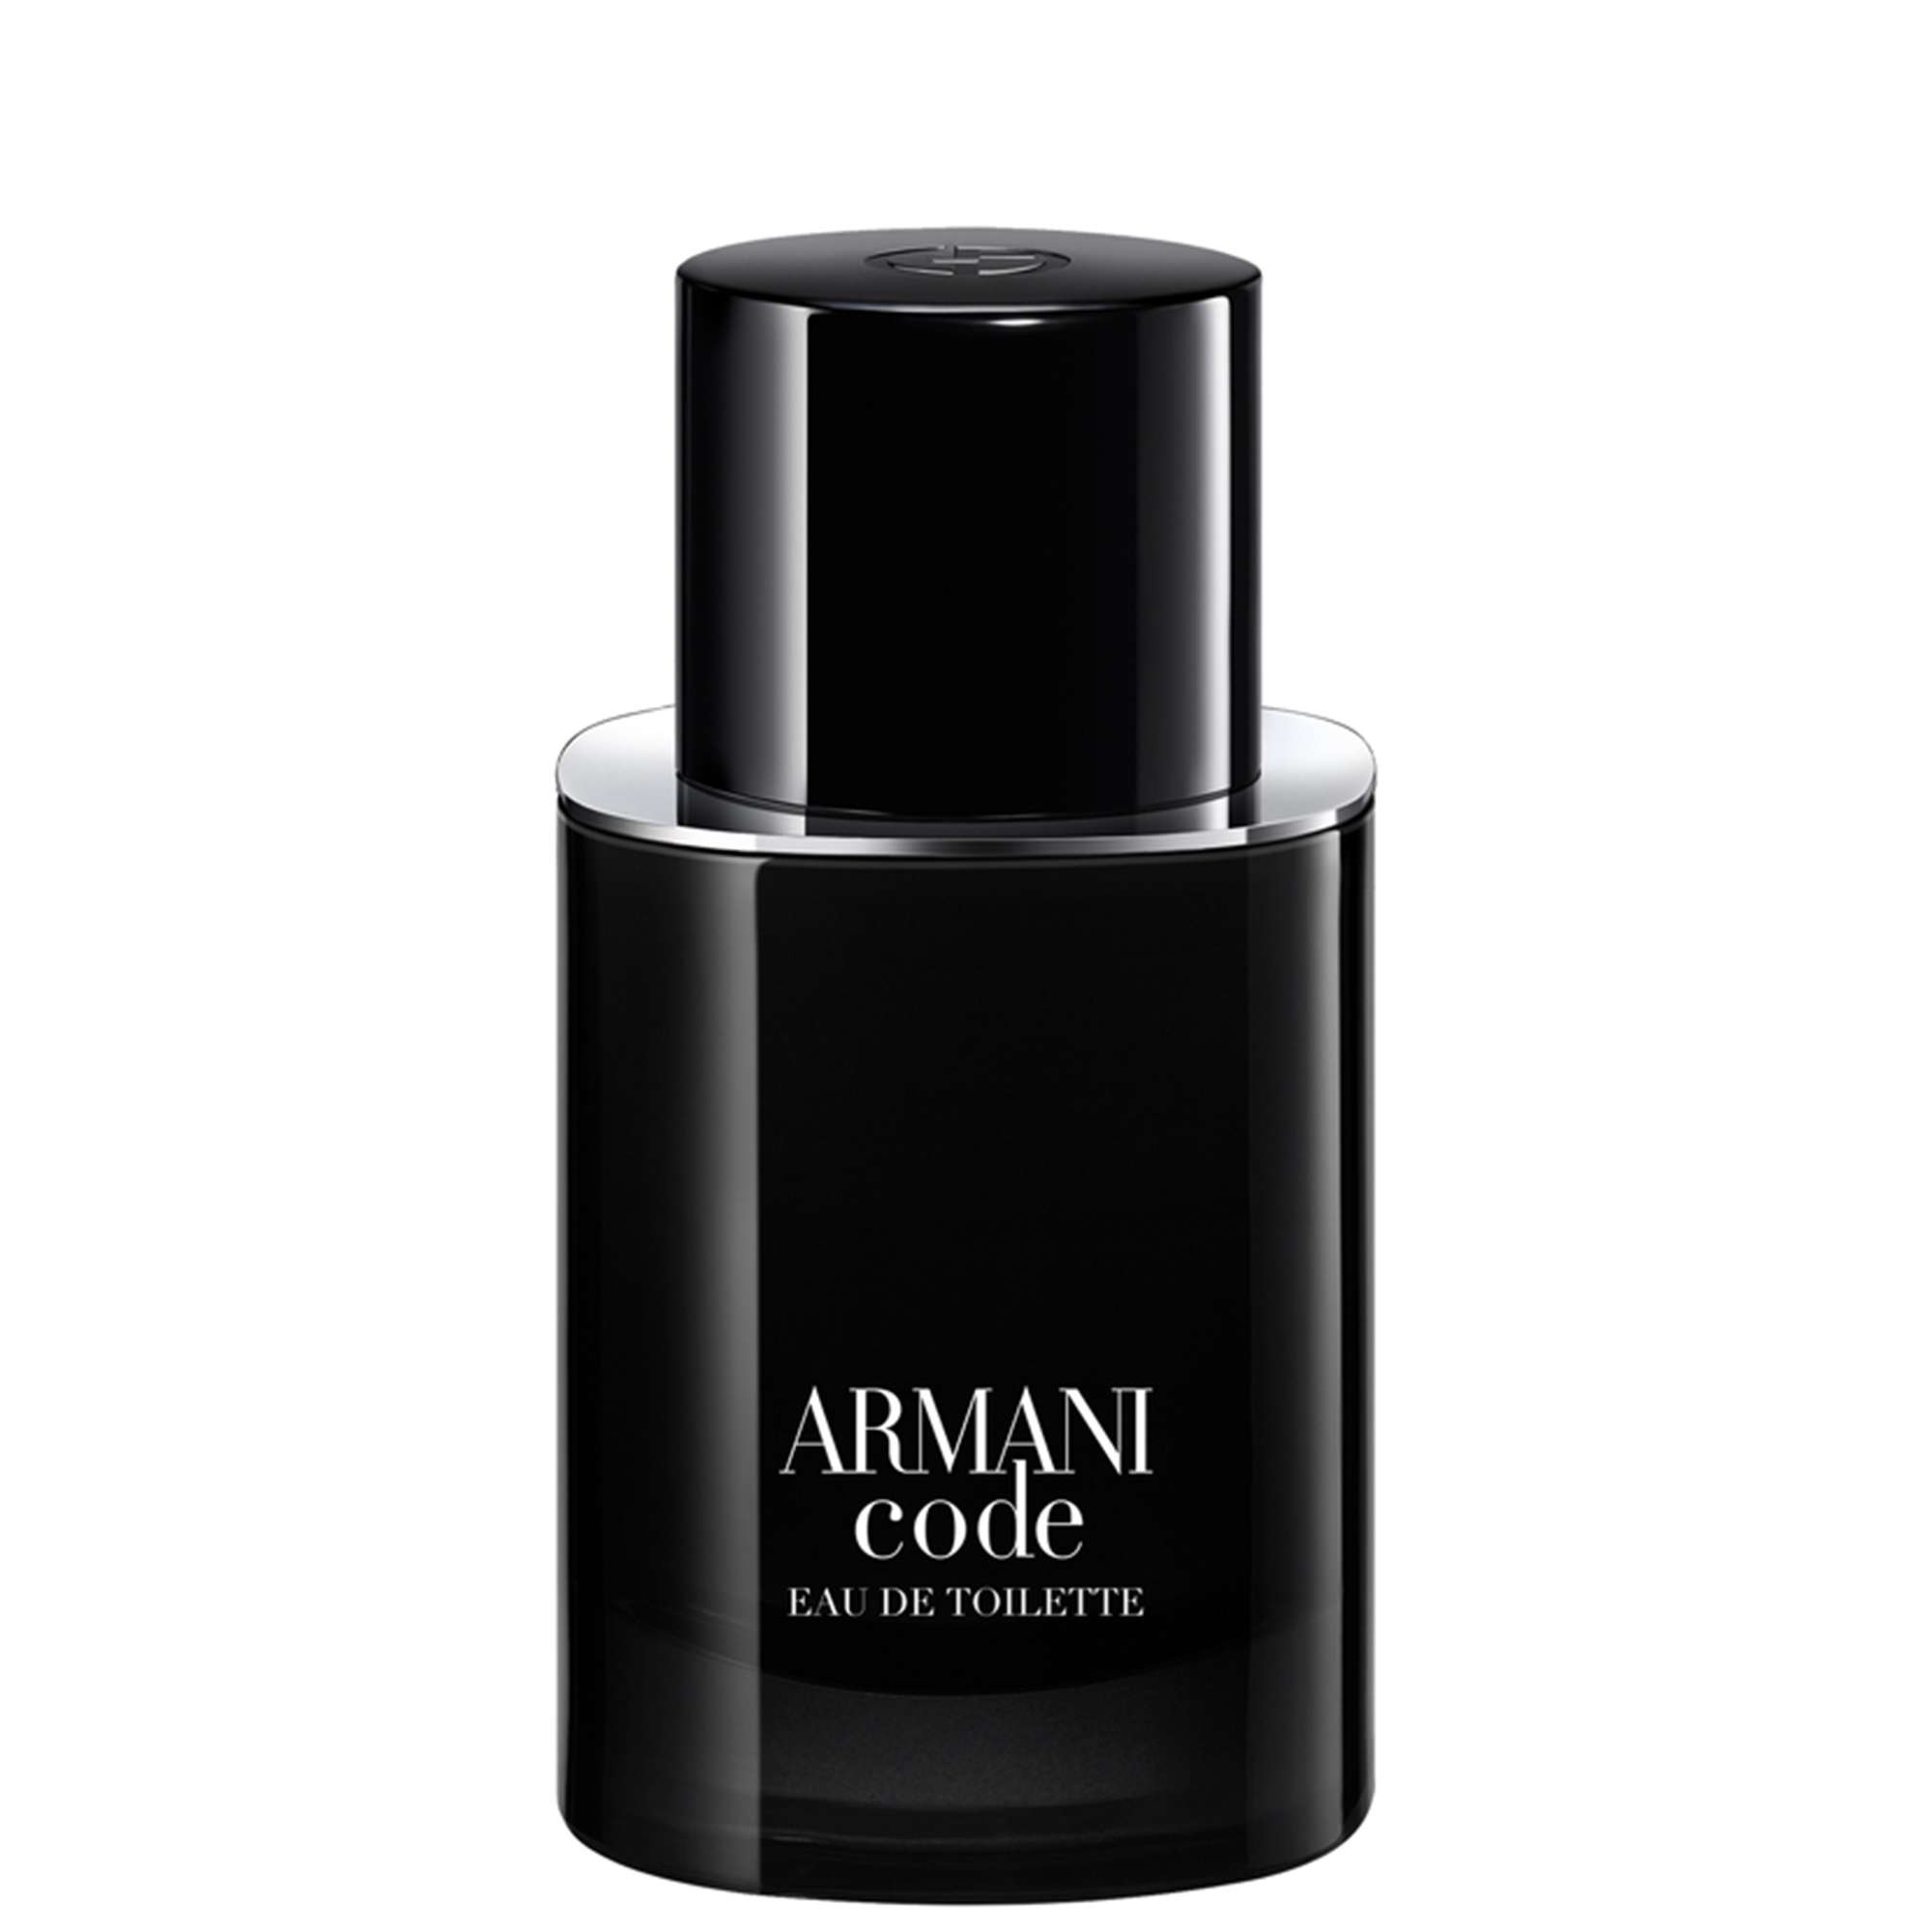 Photos - Men's Fragrance Armani Code Pour Homme Eau de Toilette Spray 50ml 